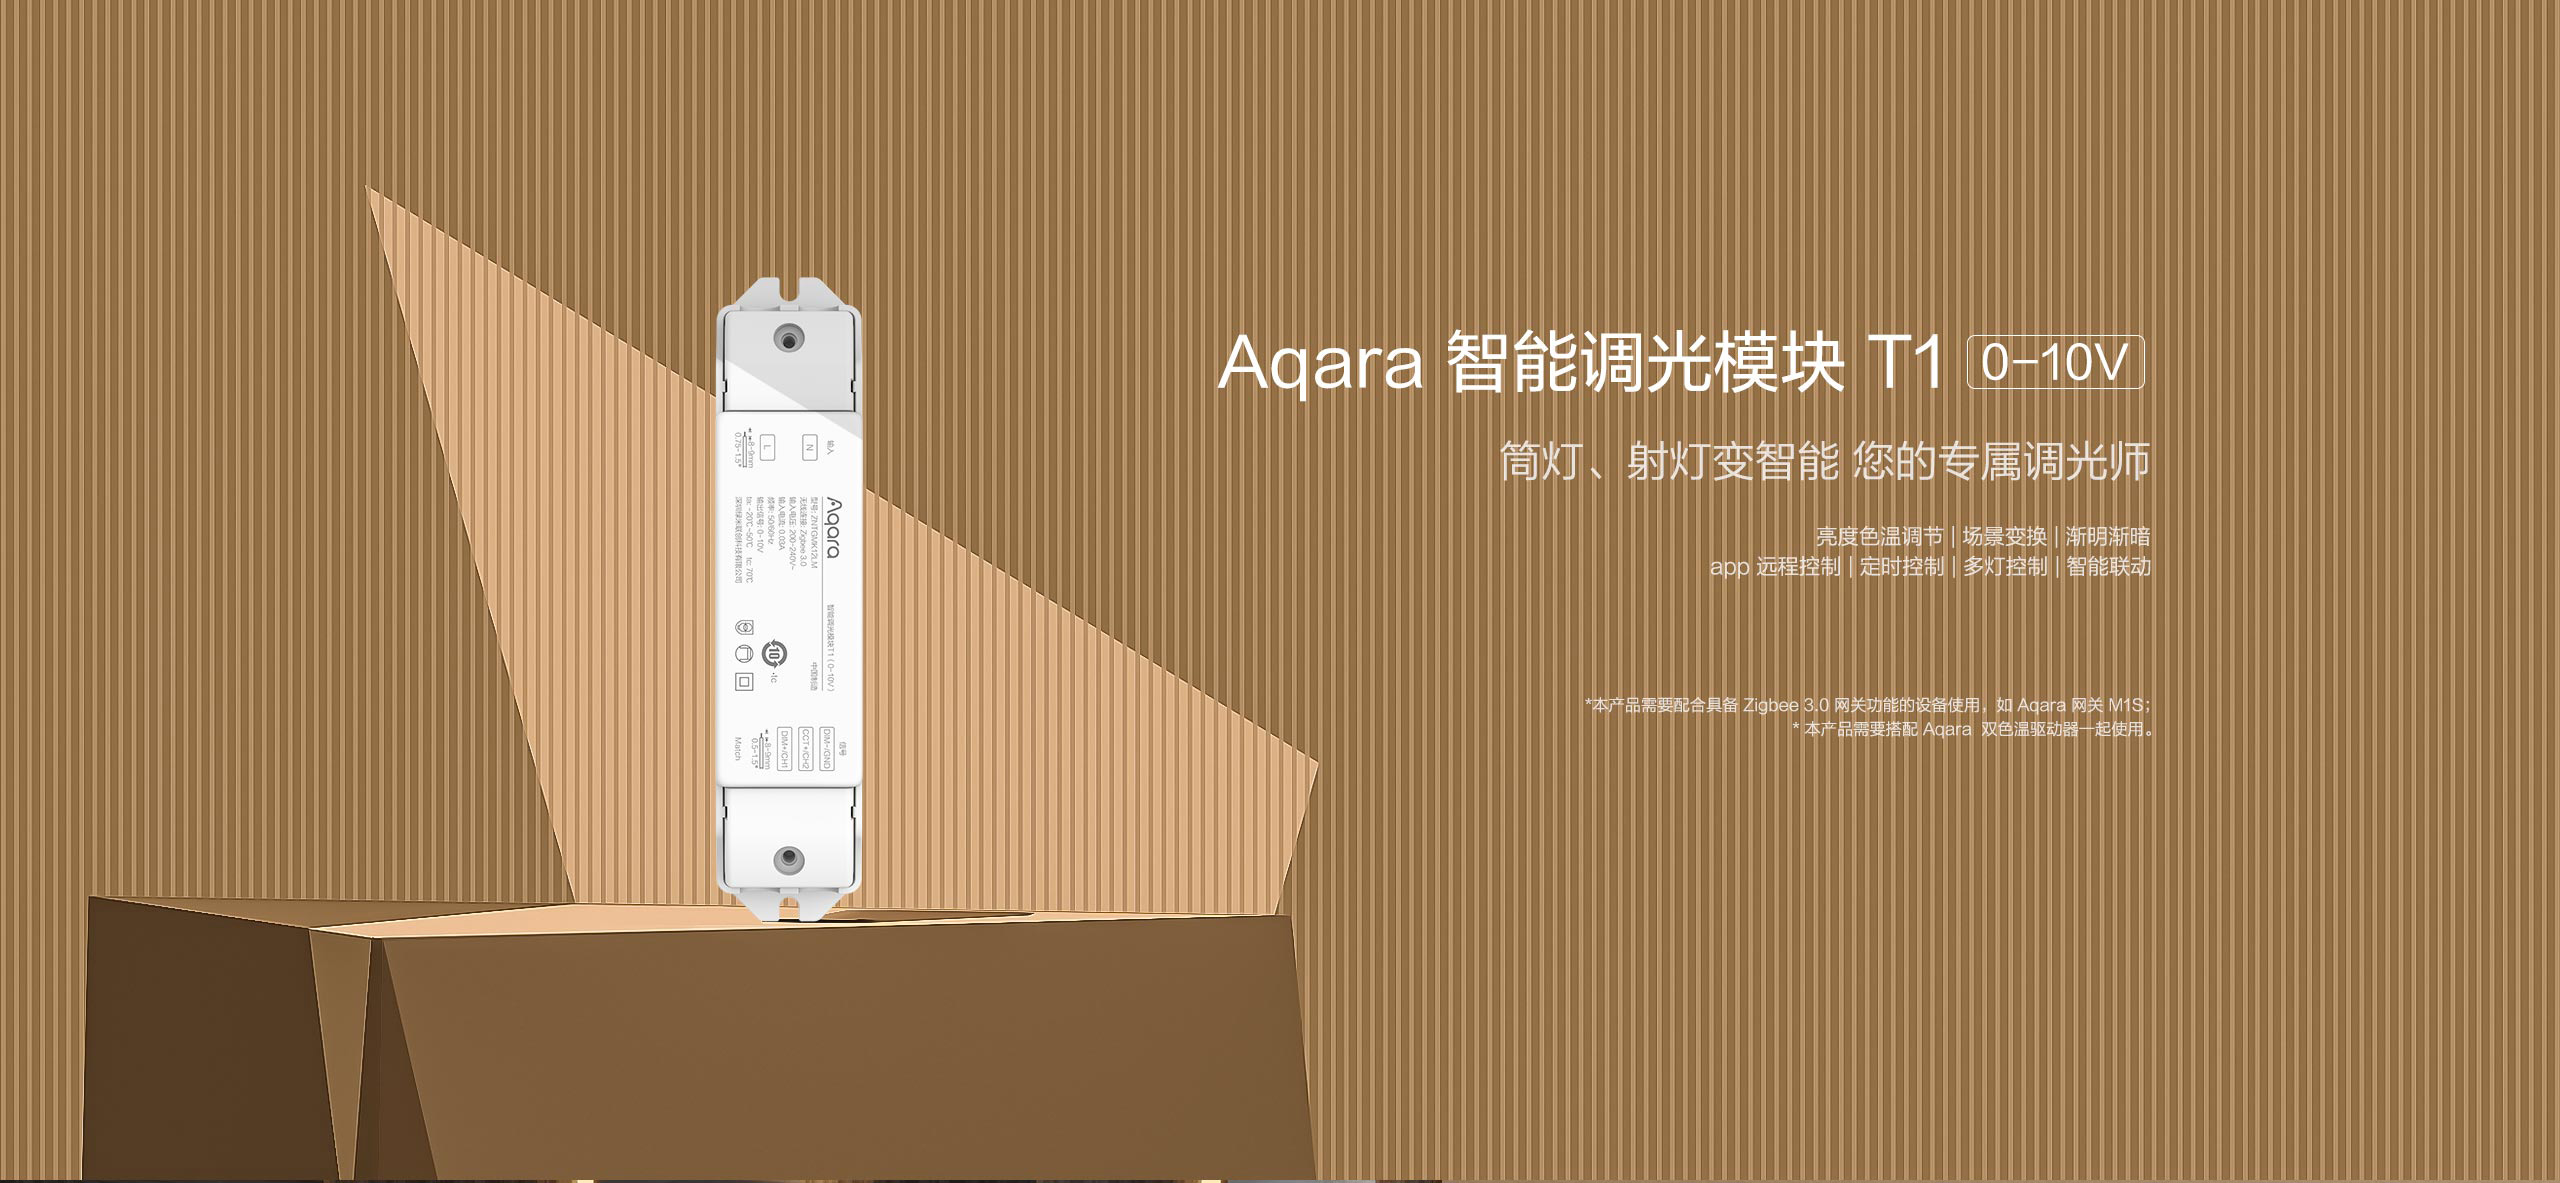 Aqara 智能调光模块 T1 (0-10v)